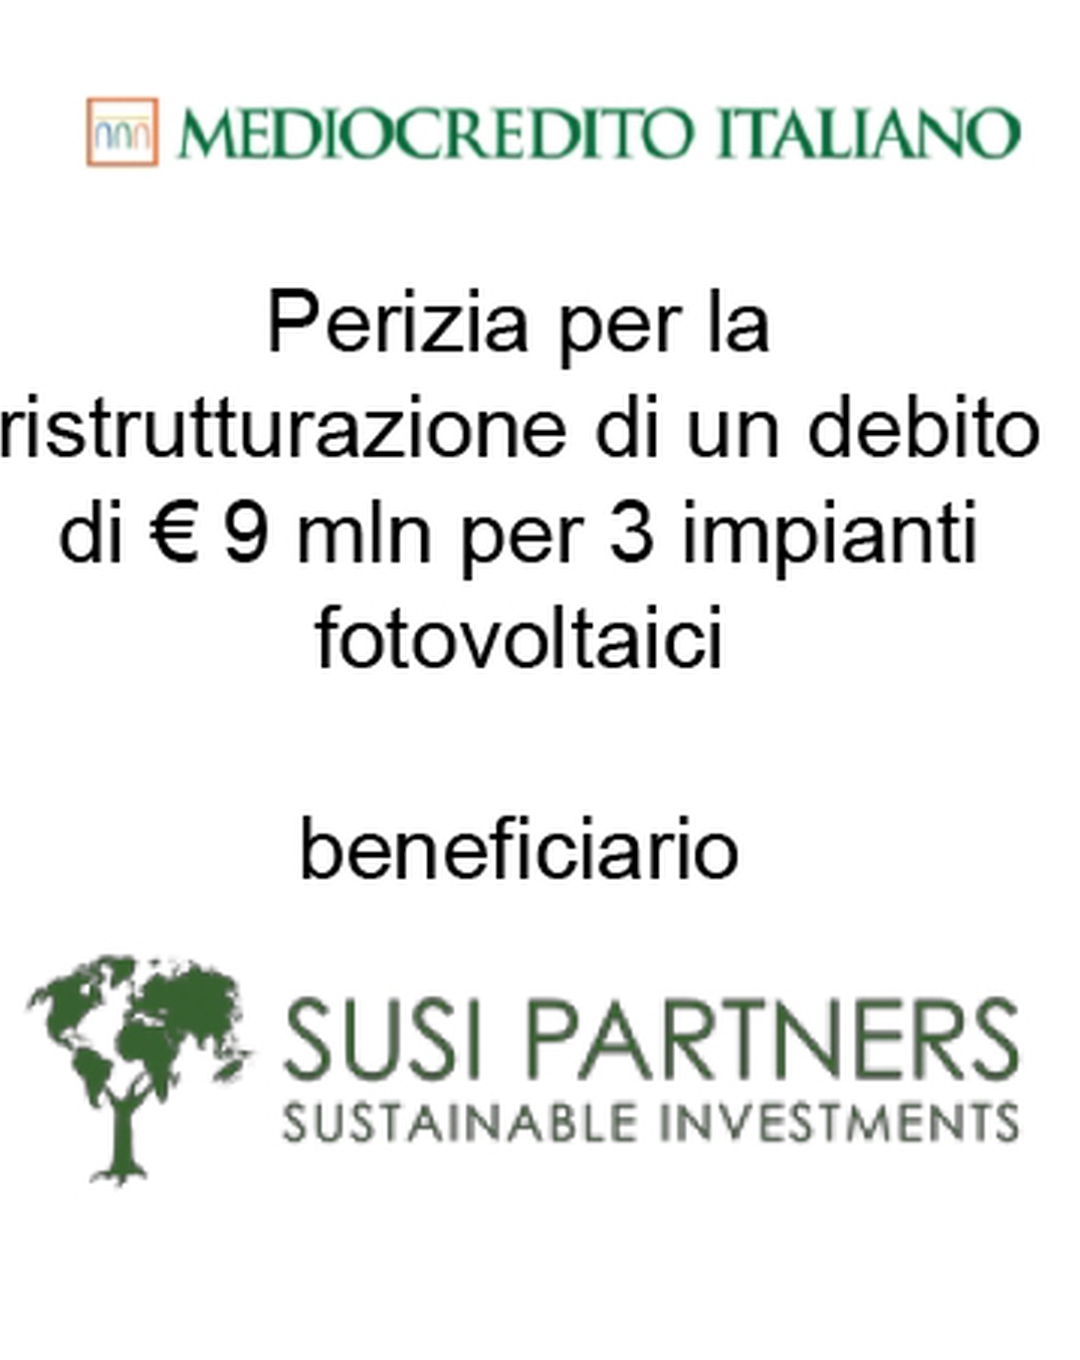 Consulente di Mediocredito Italiano (Gruppo Intesa Sanpaolo) nella ristrutturazione di un finanziamento a debito di € 9 mln per 3 impianti fotovoltaici a favore di Susi Partners (mutuatario). Ha agito in qualità di consulente della Banca. Incarico completato nel 2015.